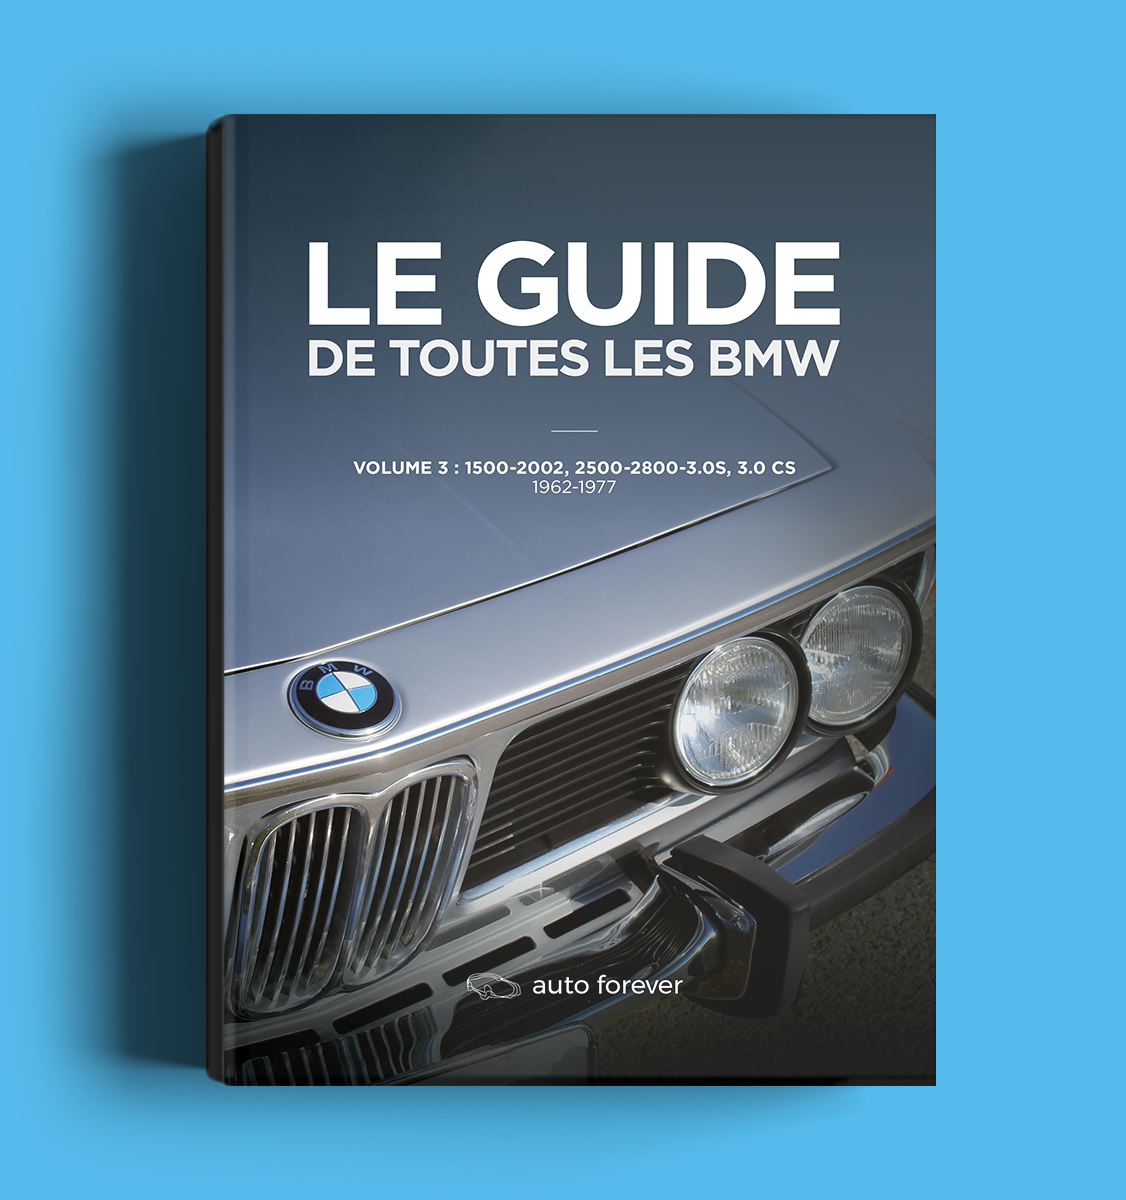 Le Guide de toutes les BMW volume 3 1500-2002, 2500-2800-3.0S, 3.0 CS